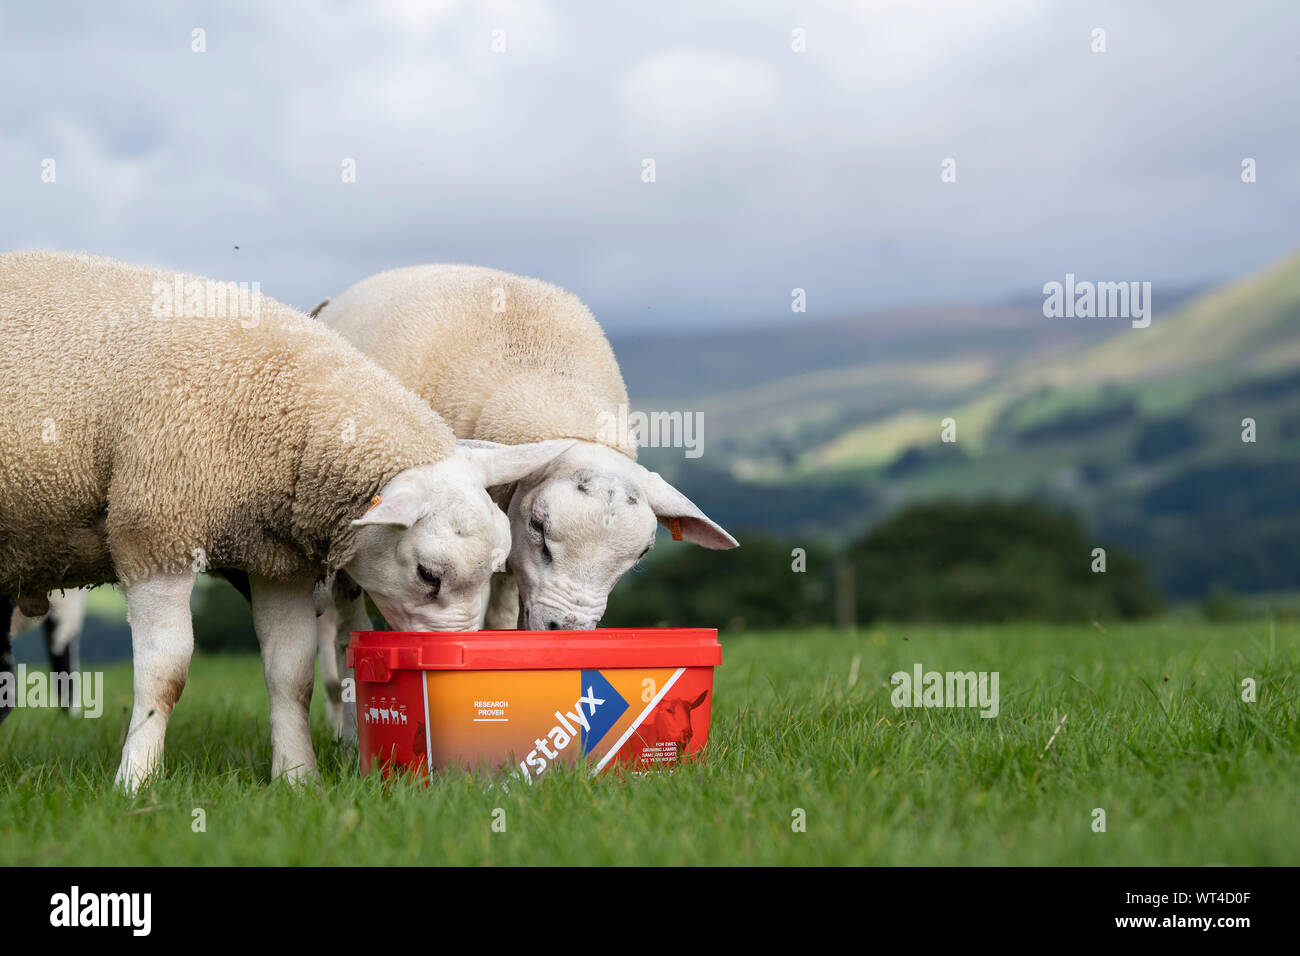 Herde von Schafen essen von einem Ergänzungsfuttermittel Ladeschaufel, das Ihnen die mit zusätzlichen Vitaminen und Mineralien für eine bessere Gesundheit. North Yorkshire, UK. Stockfoto